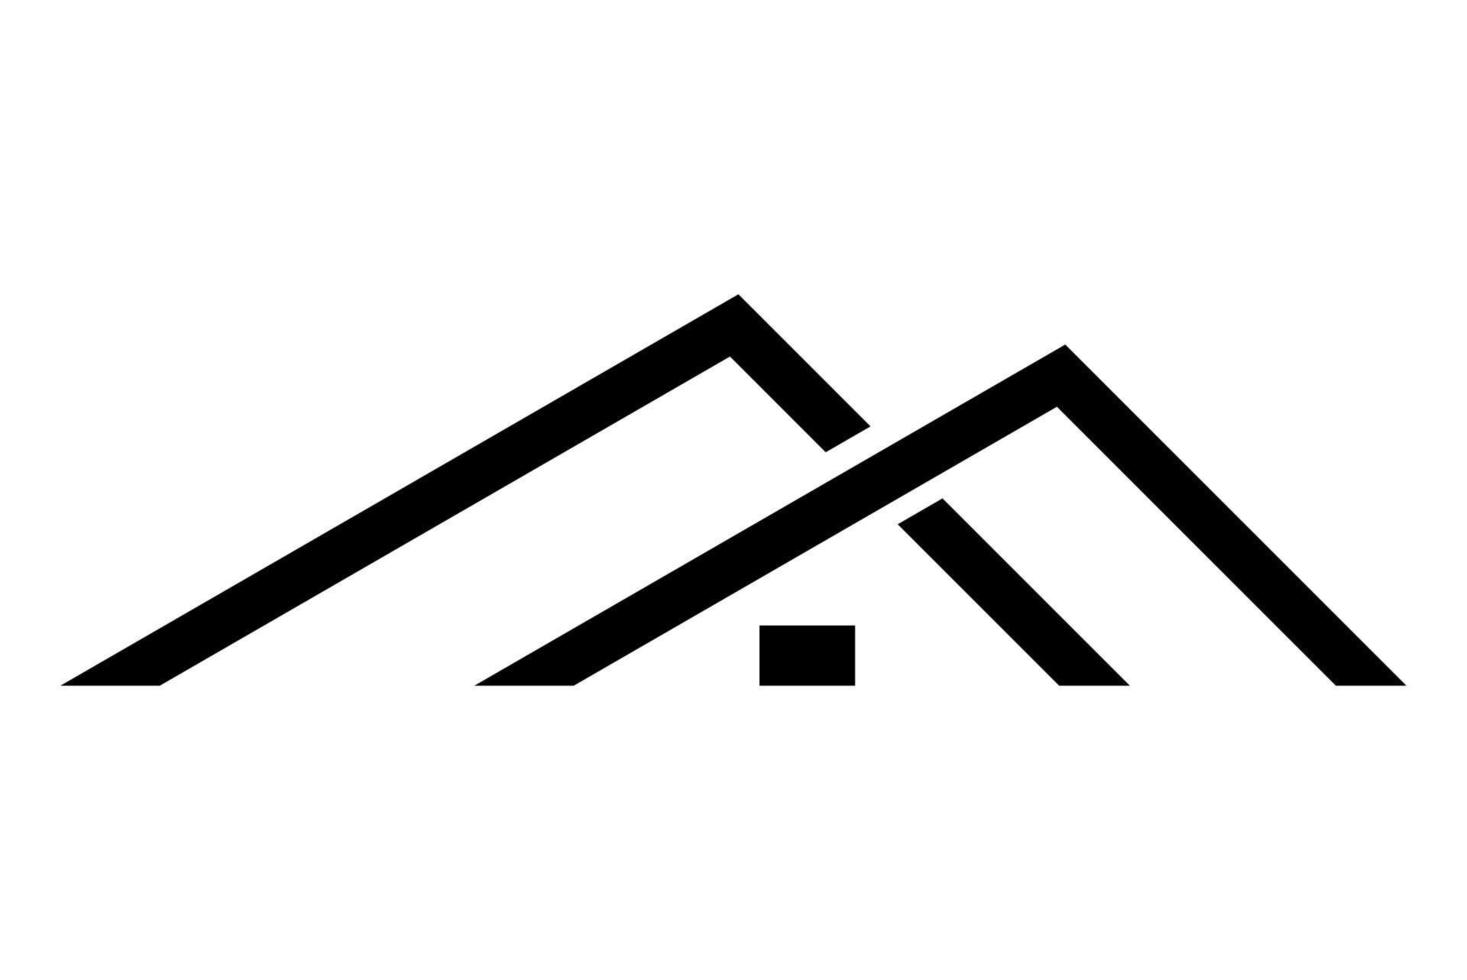 création de logo de maison noire isolée sur fond blanc, illustration vectorielle vecteur